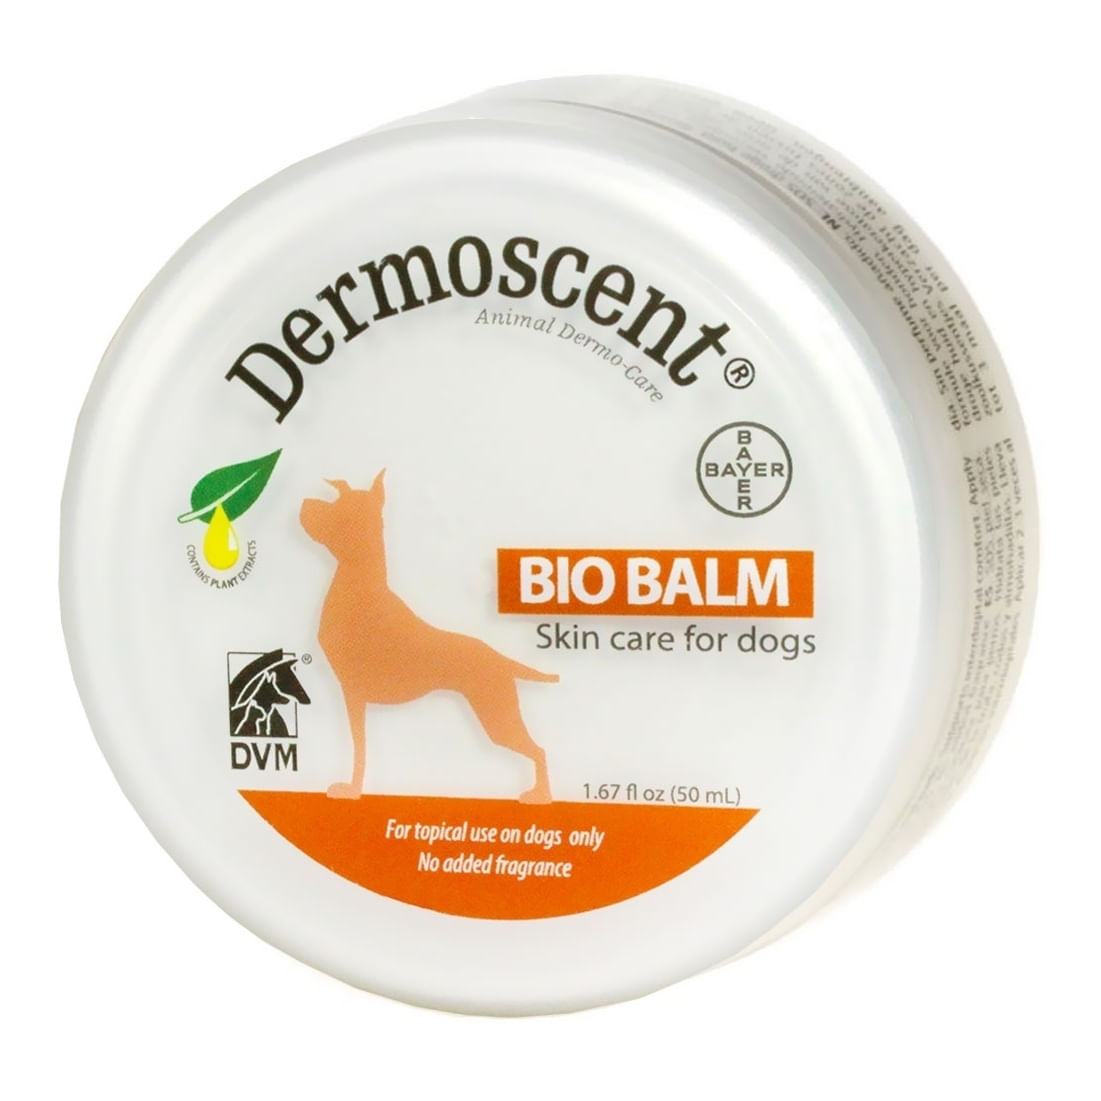 DERMOSCENT Bio Balm, cremă pentru labuțe câini, hidratantă, cutie, 50ml